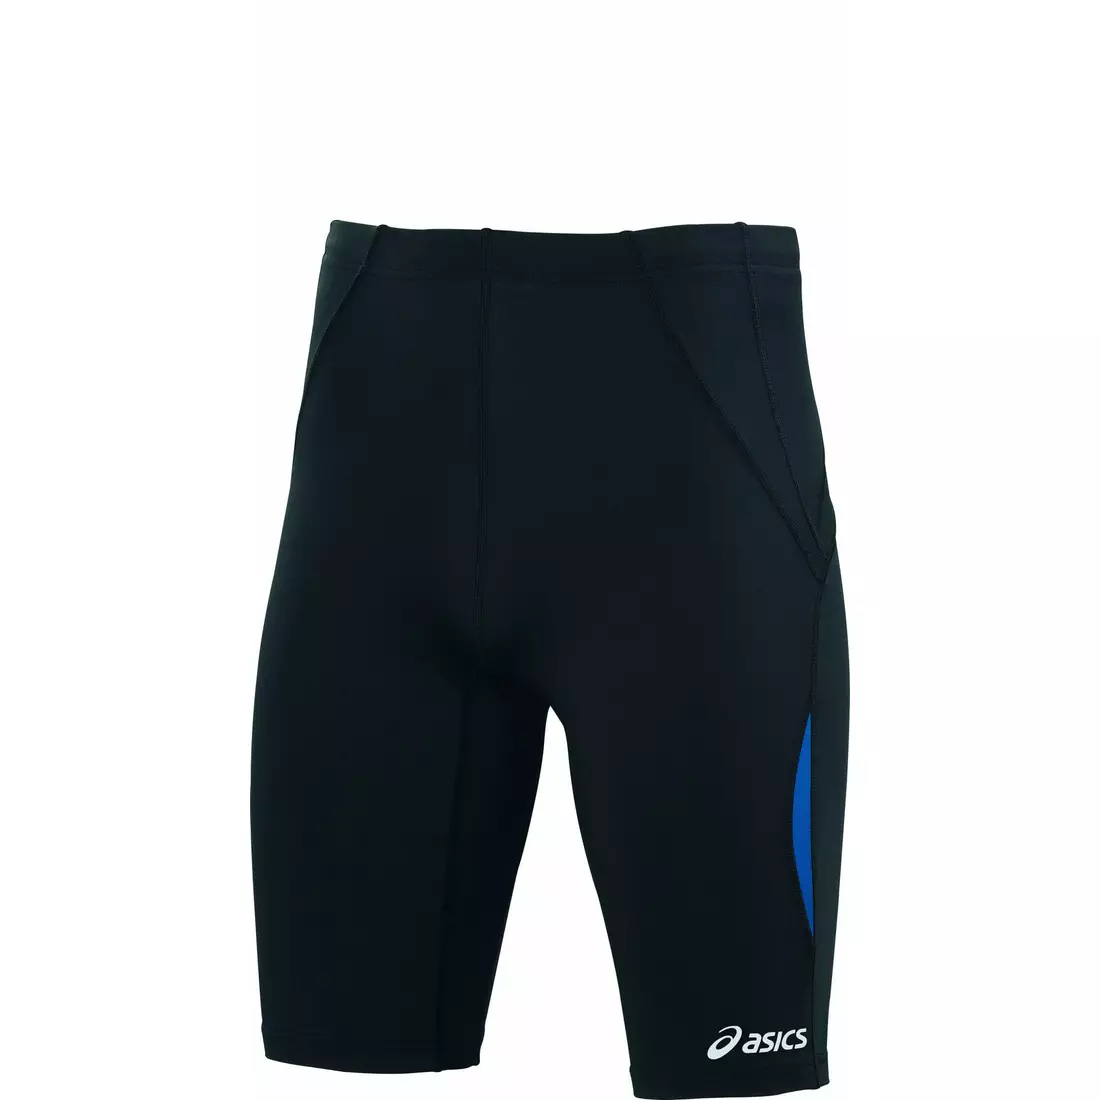 ASICS 321251-8026 - men's SPRINTER running shorts